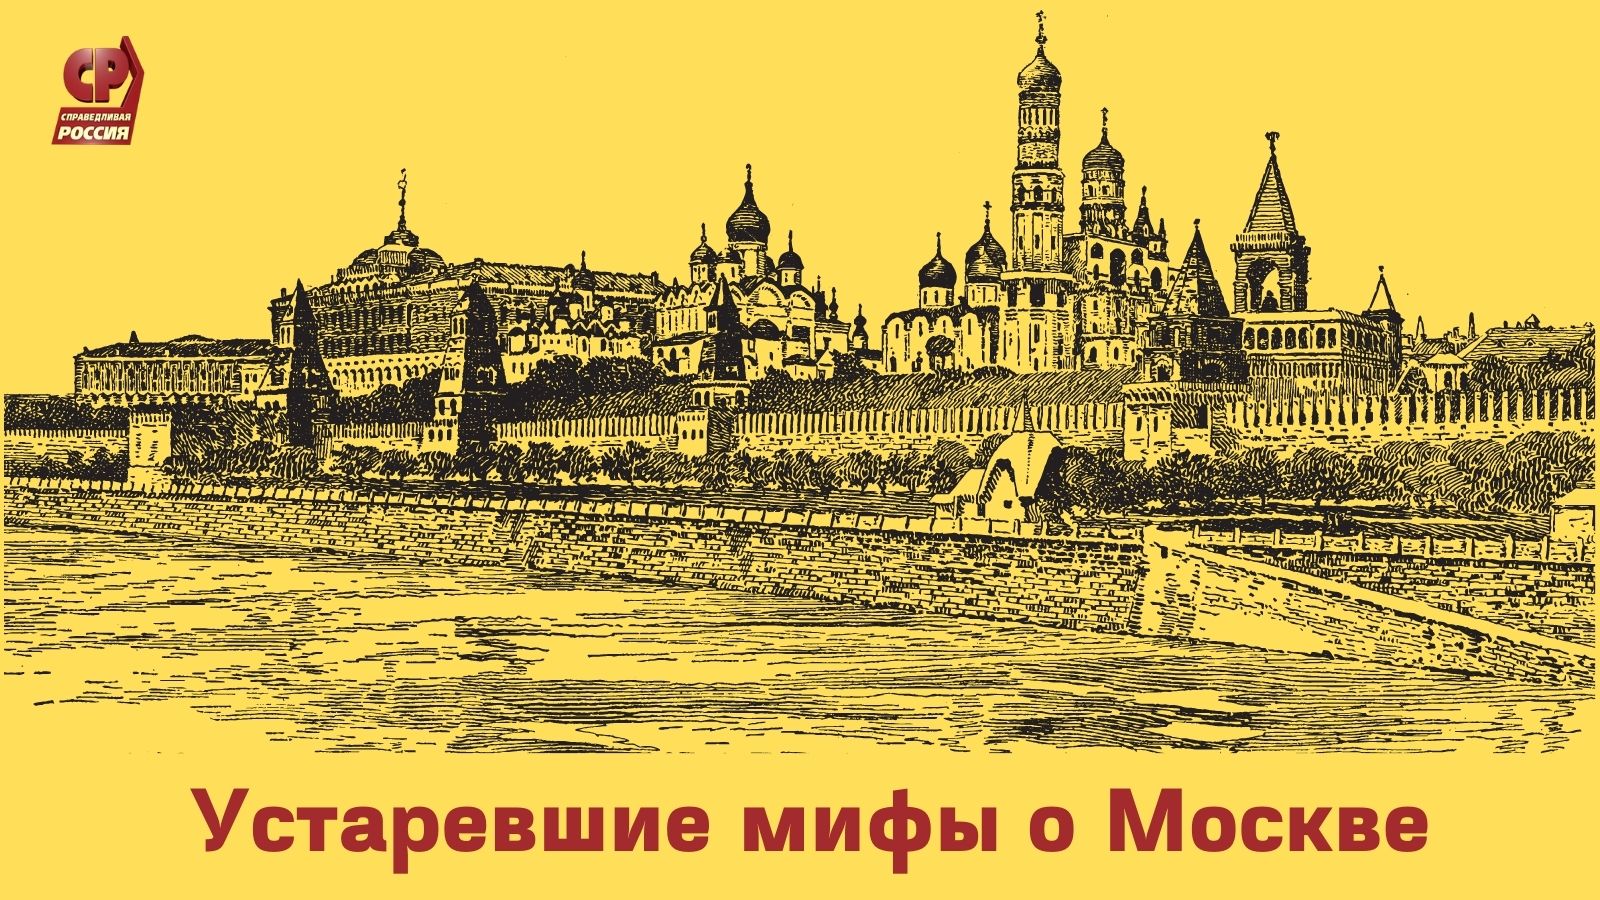 Мифы о Москве